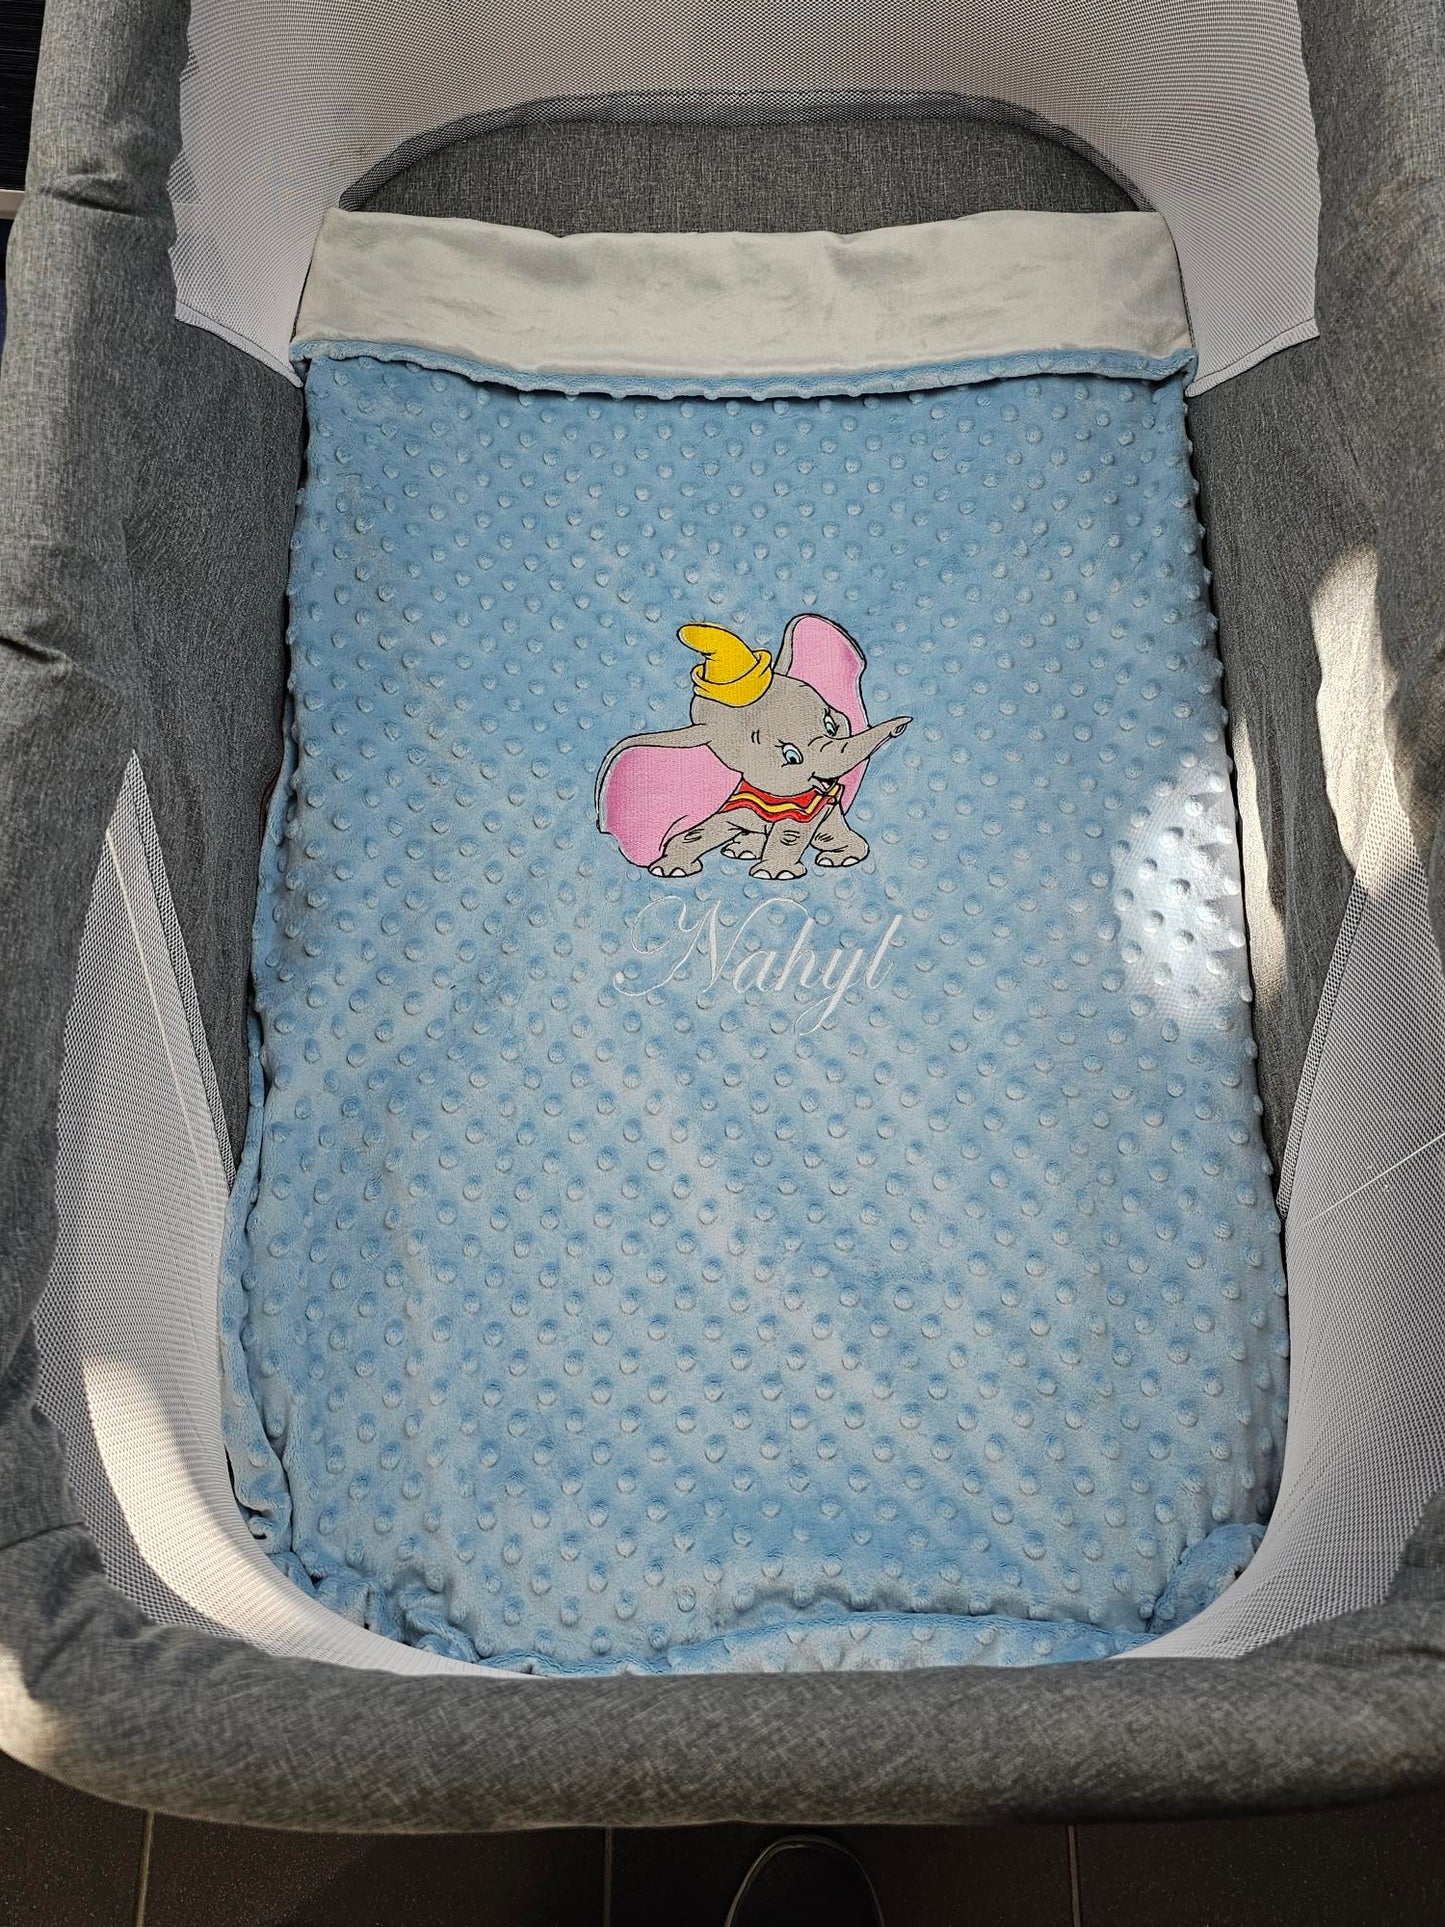 Manta de bebé con bordado personalizado - Modelo niño - Calincaline.be